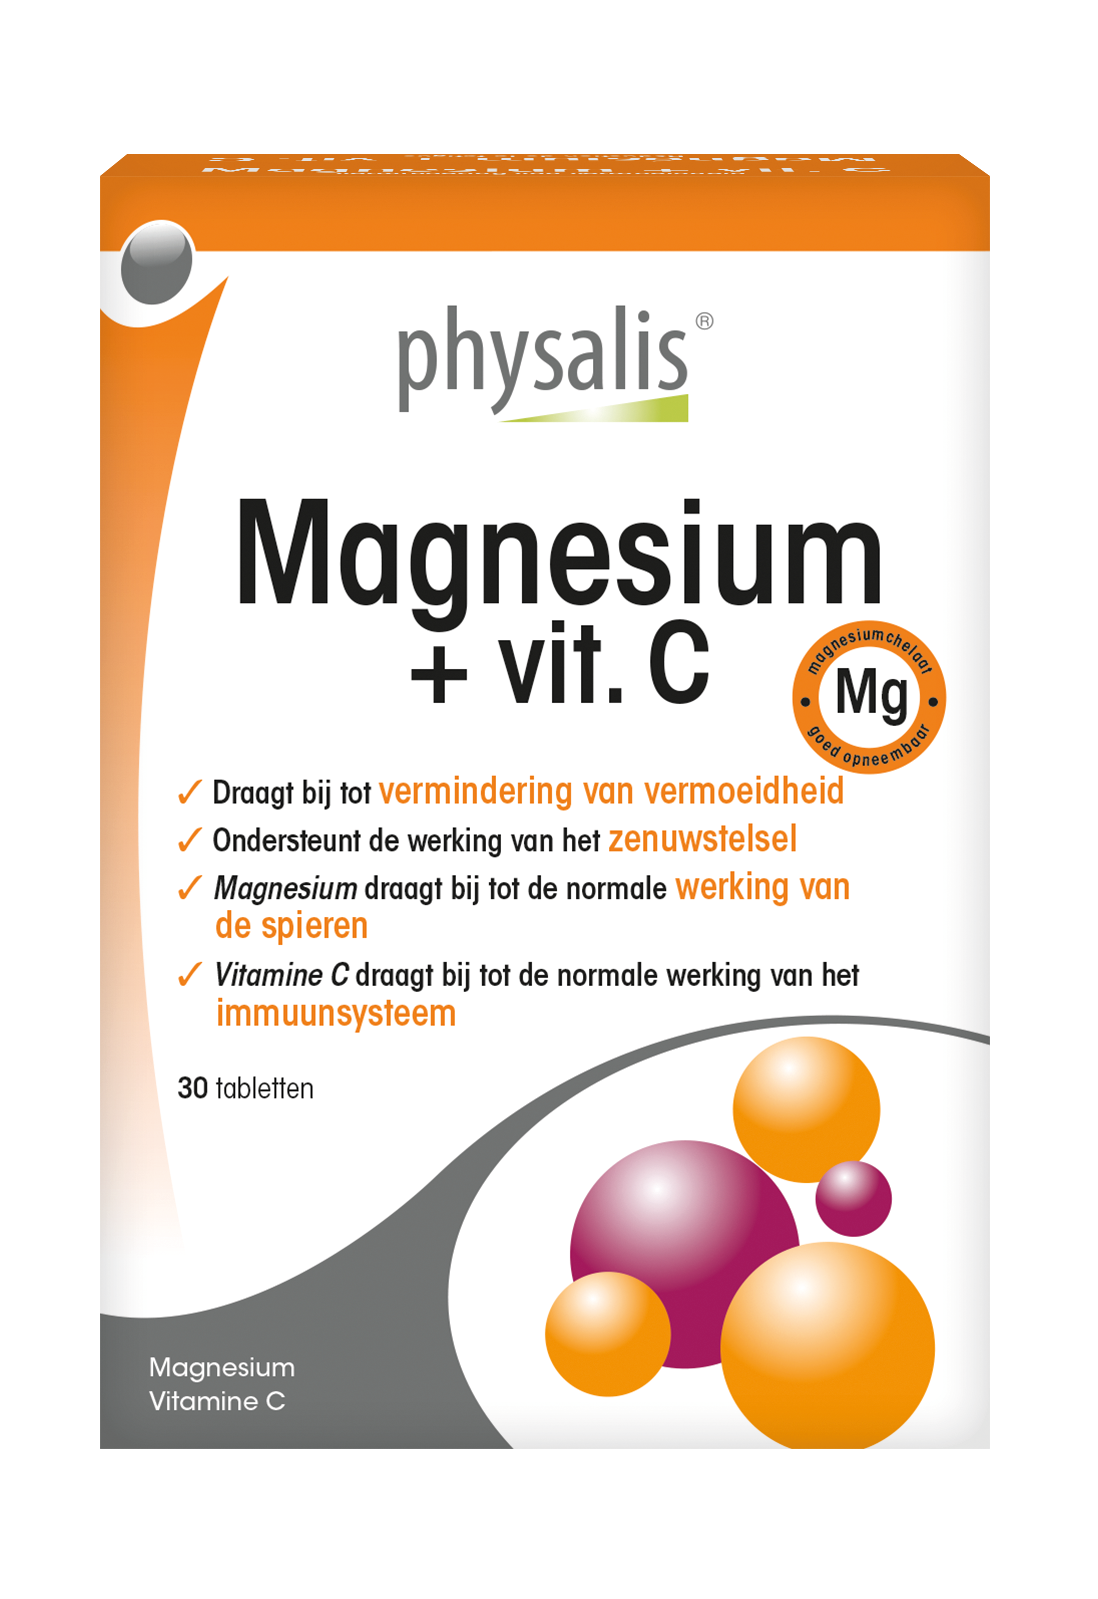 Magnesium + vit. C